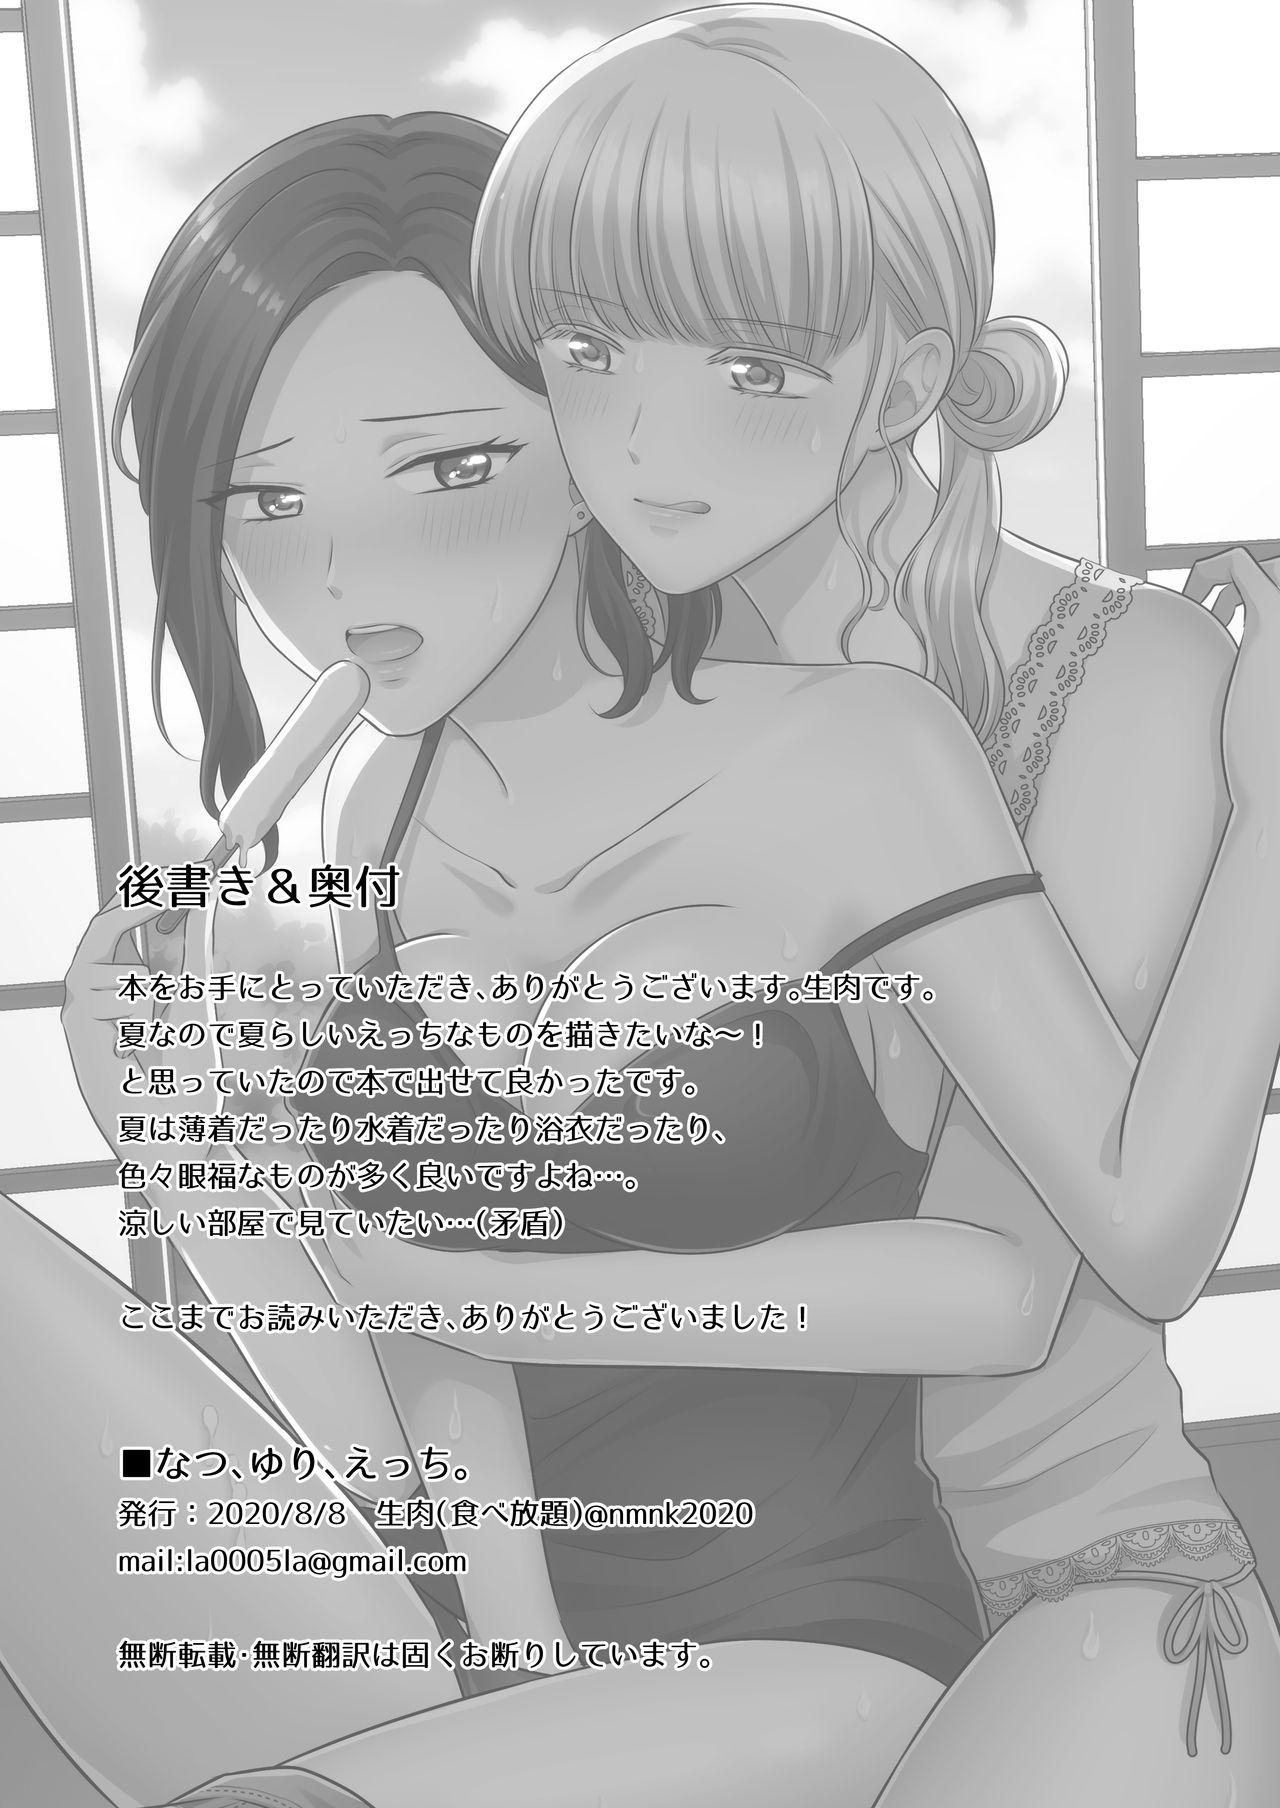 Summer, Yuri, and Ecchi. 9